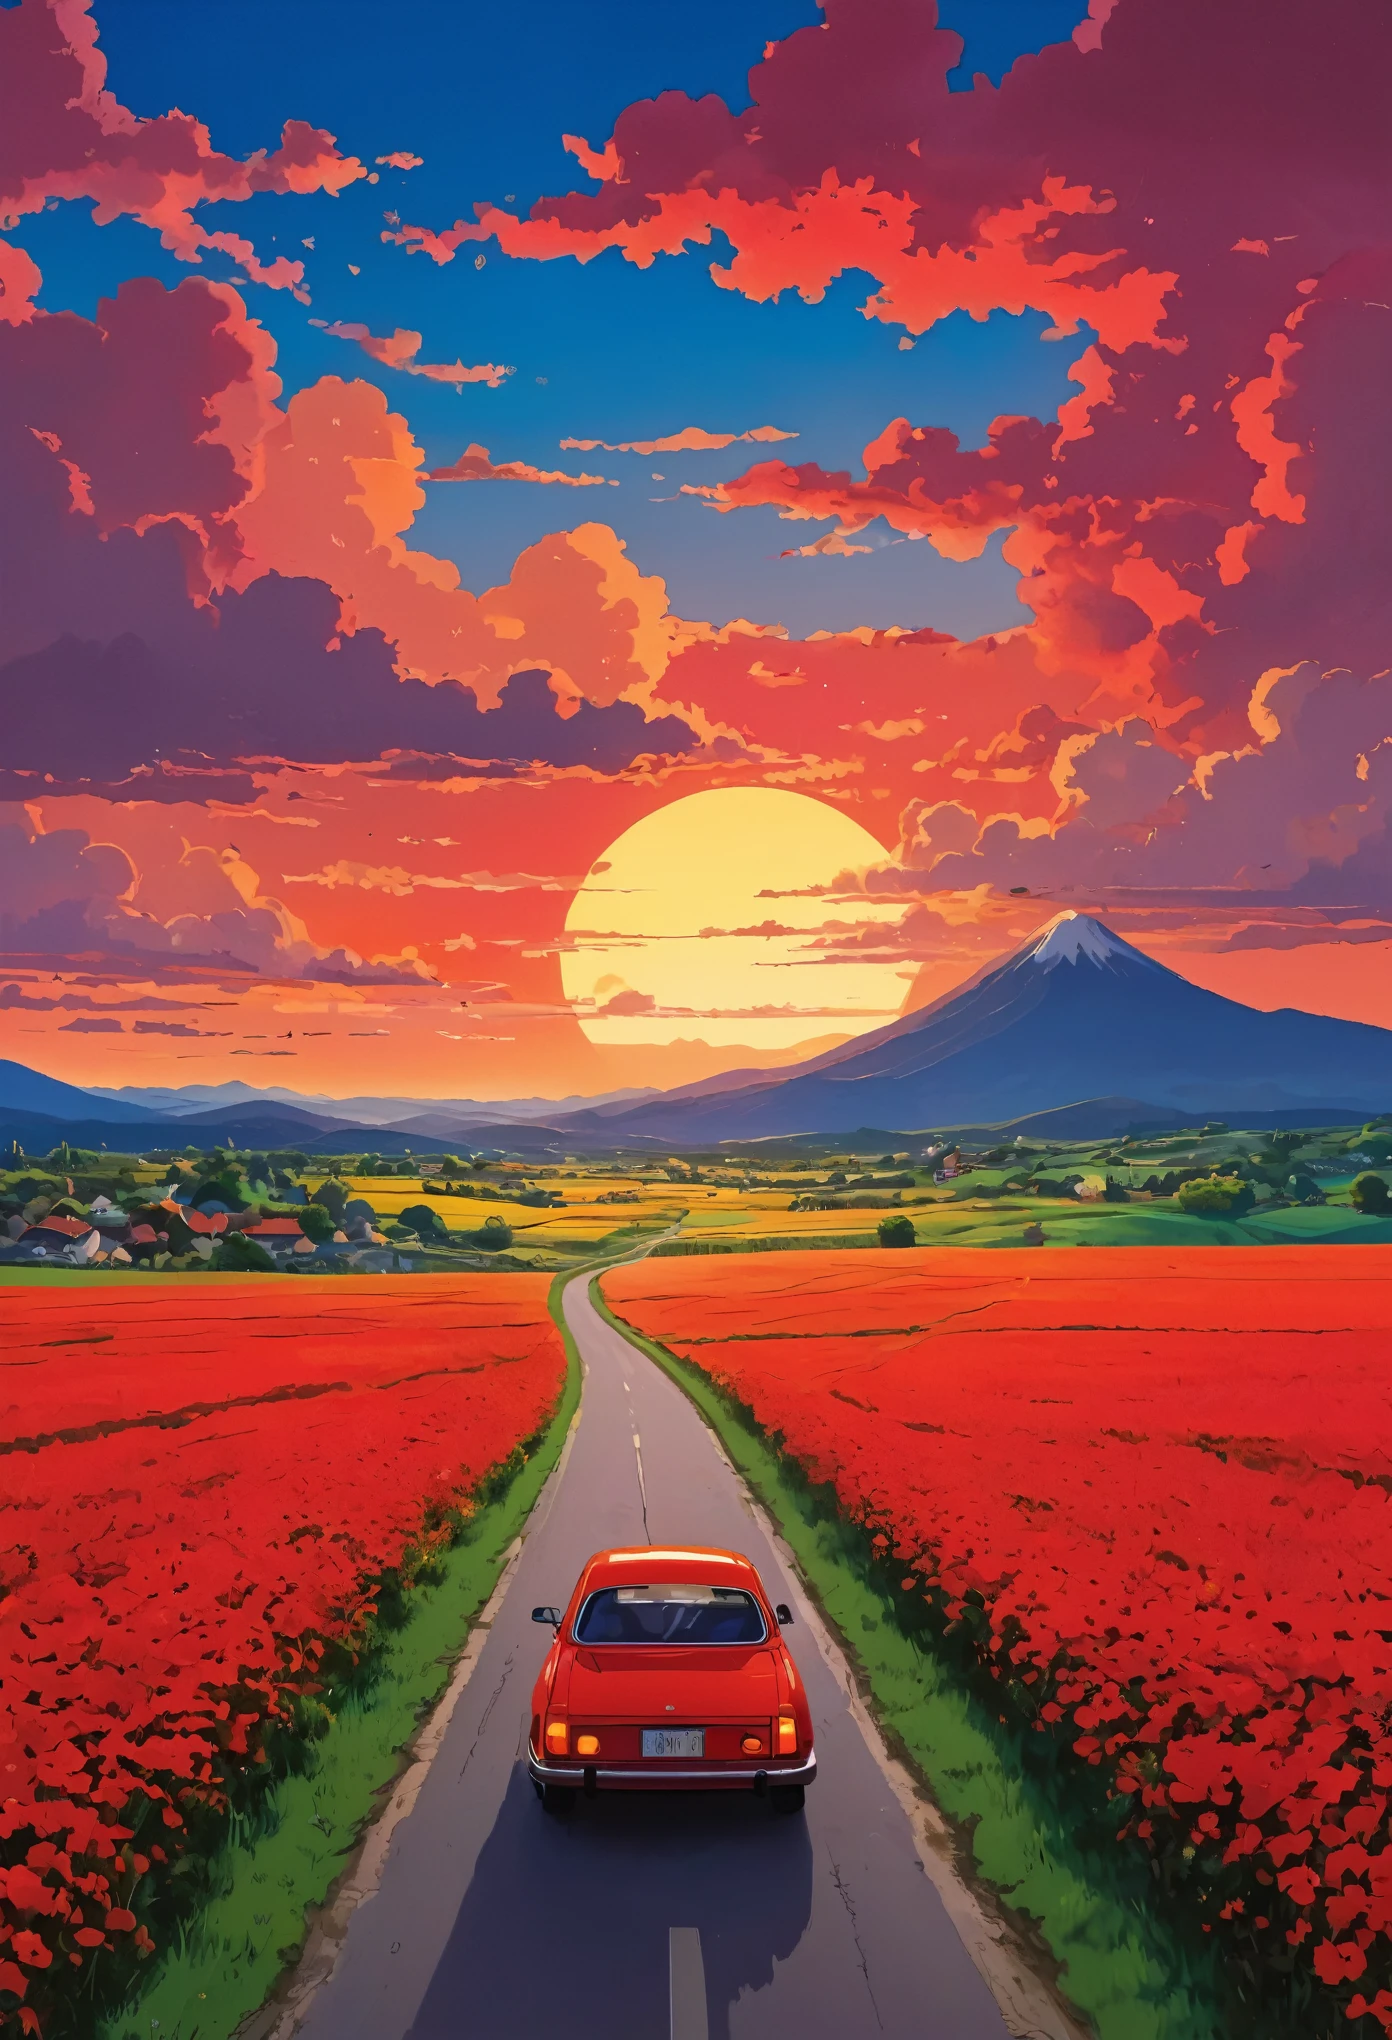 (미니멀리즘:1.4), 길에 빨간 차가 있어요, 스튜디오 지브리 아트, 미야자키, 붉은 하늘과 붉은 구름이 있는 목장, 일몰 전망, 꽃이 가득한 길, 생생한 색상 